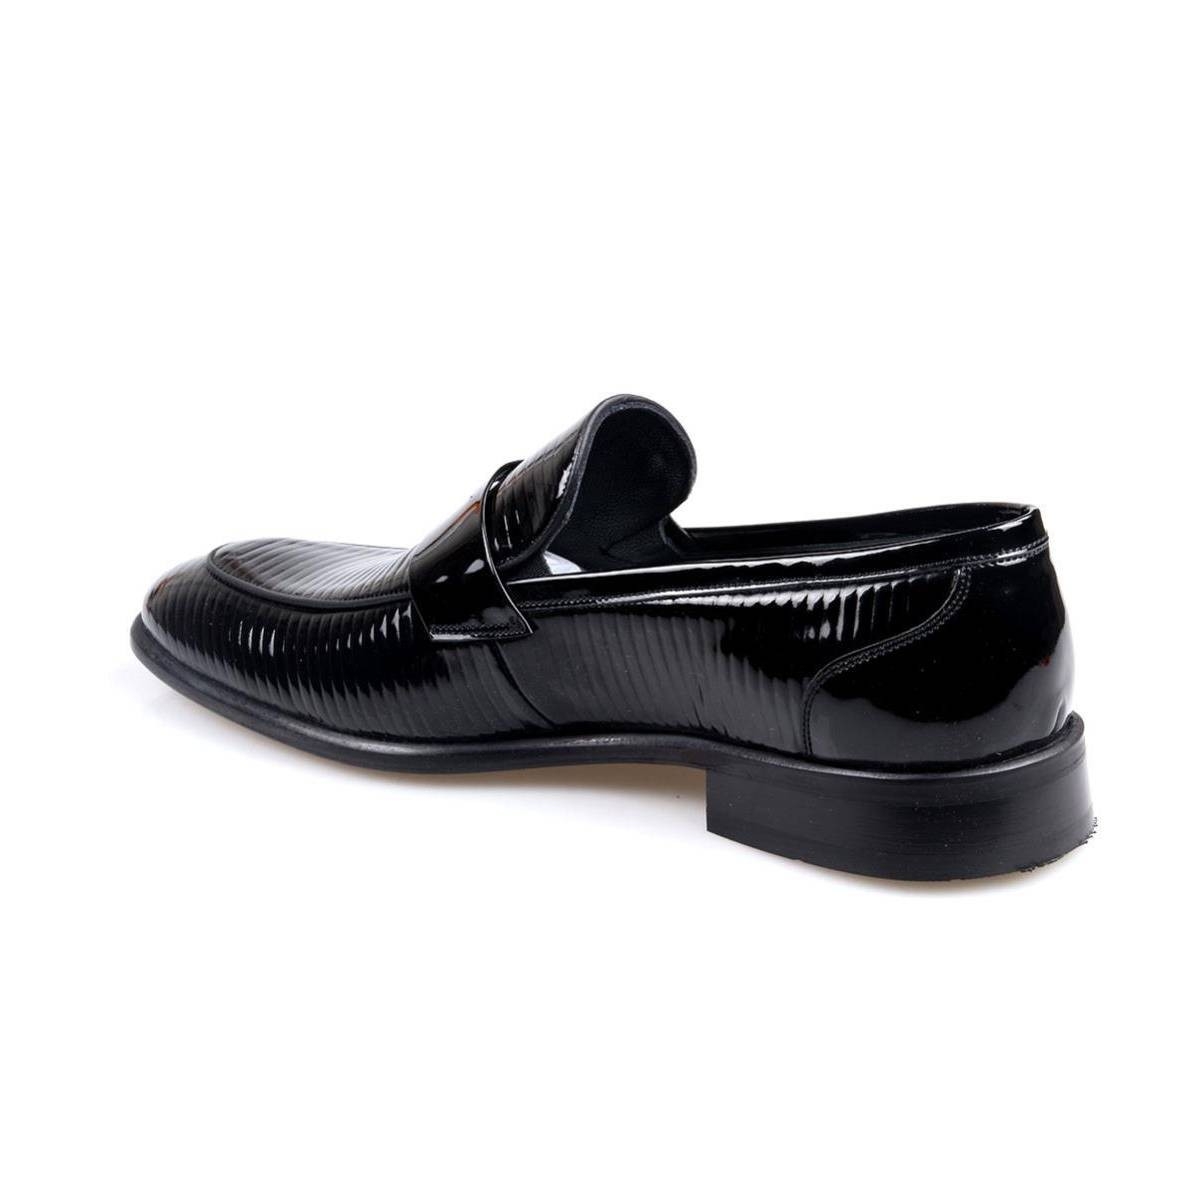 Flo Erkek (39-44) Deri Siyah Rugan Klasik Jurdan Ayakkabı. 1